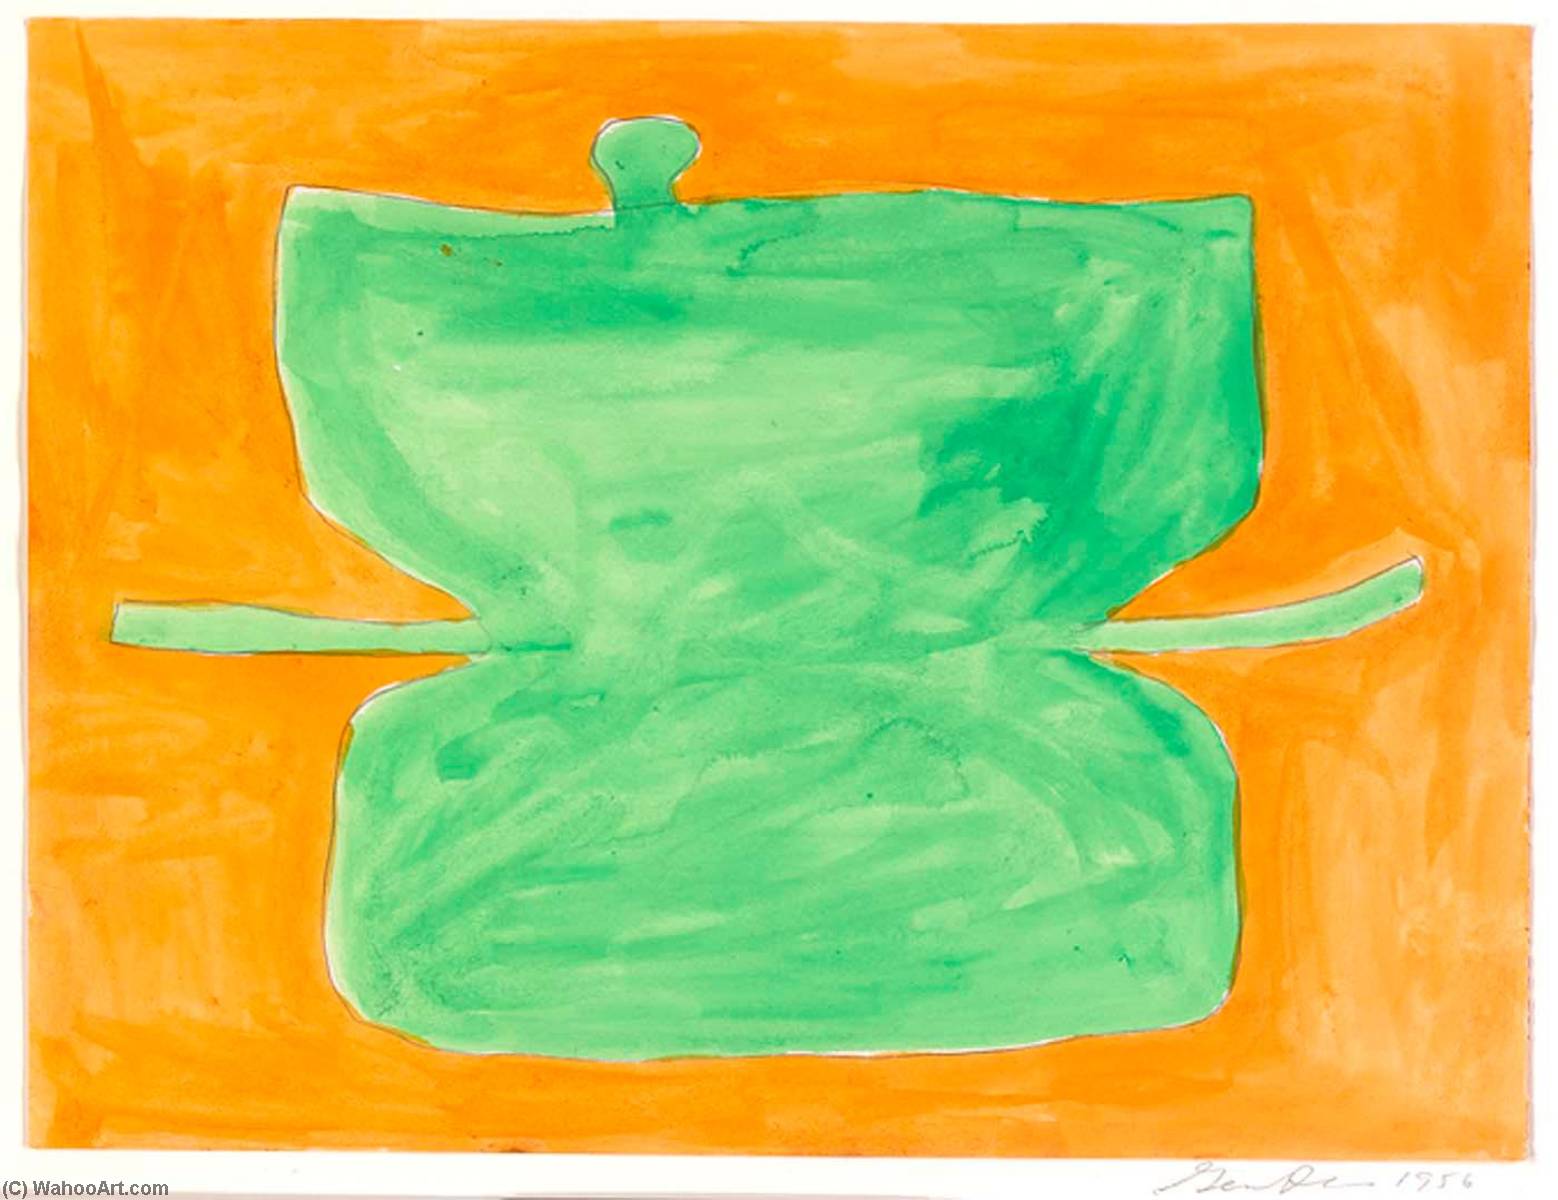 Wikioo.org - Bách khoa toàn thư về mỹ thuật - Vẽ tranh, Tác phẩm nghệ thuật Gene Davis - Untitled (Green and Orange)